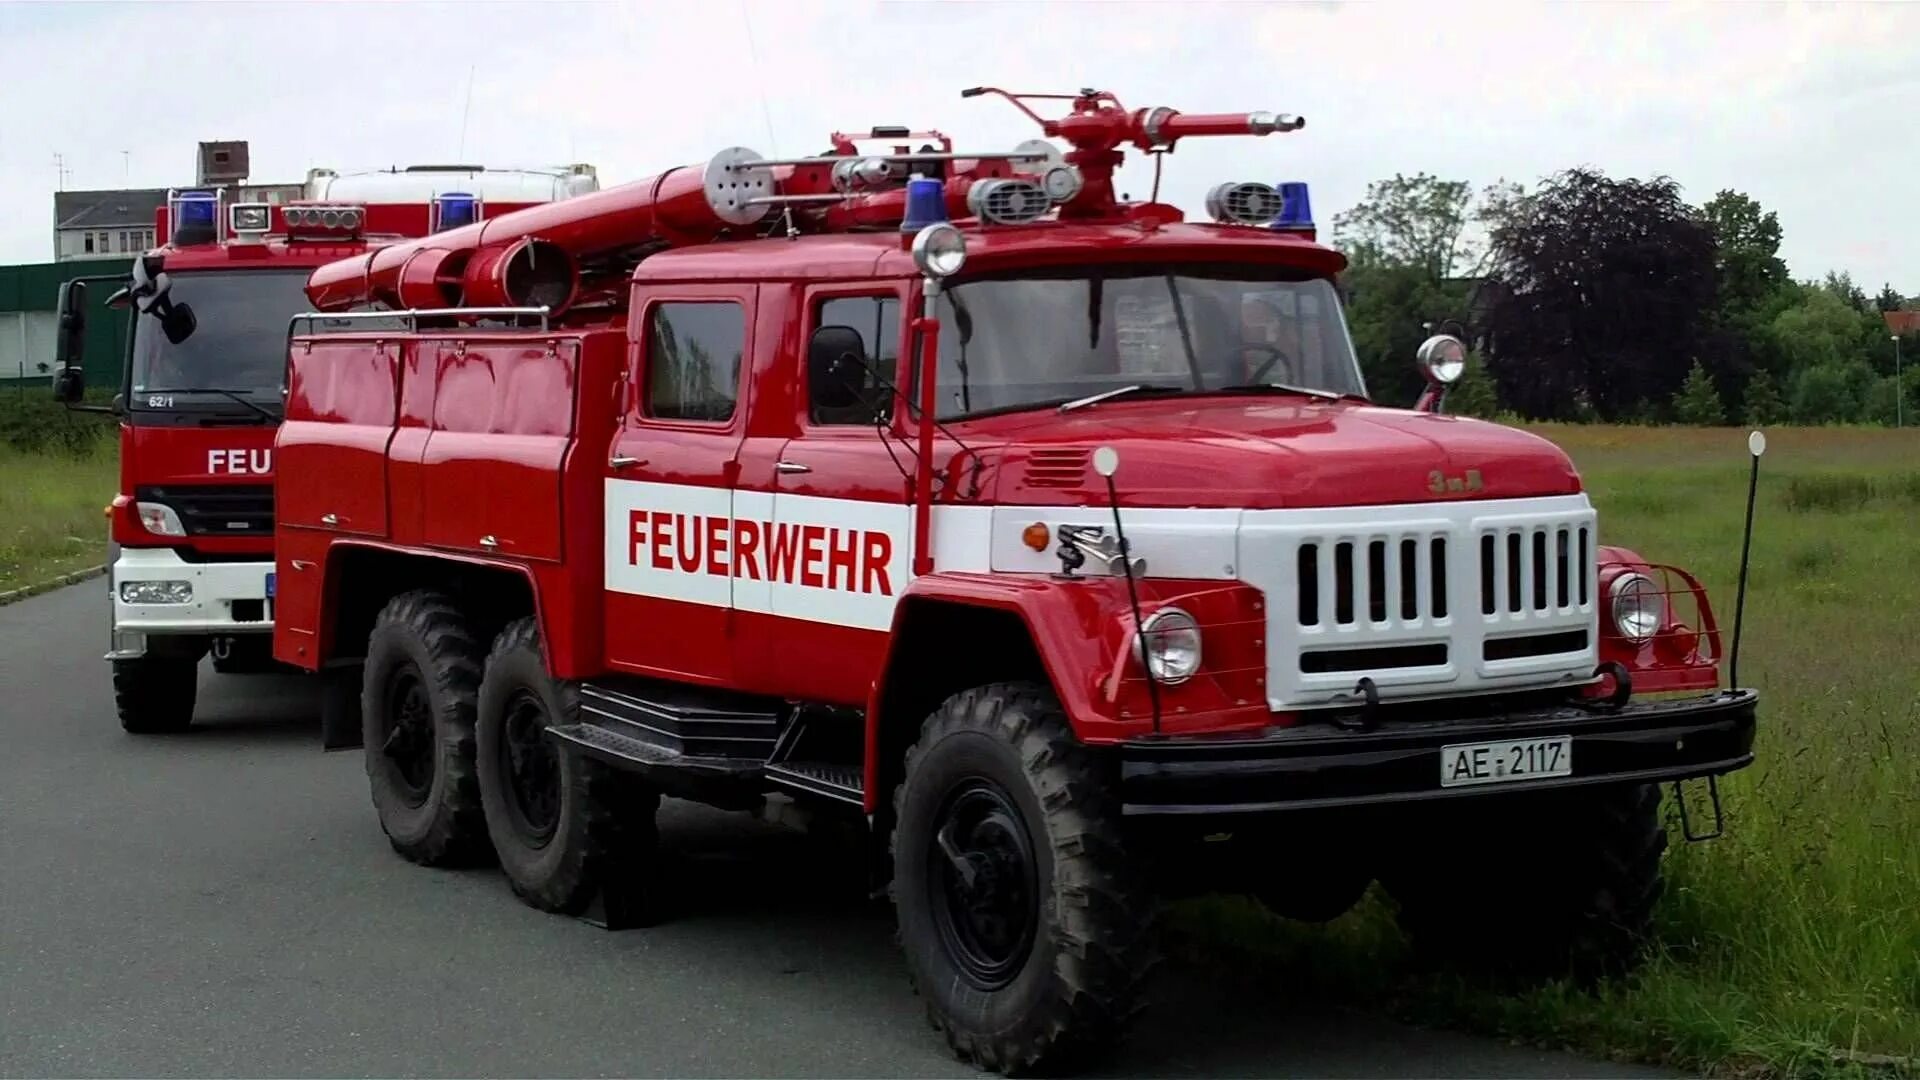 Пожарная машина ЗИЛ 131. ЗИЛ 131 пожарный Германия. ЗИЛ 130 пожарный. ЗИЛ-131 пожарный автомобиль.